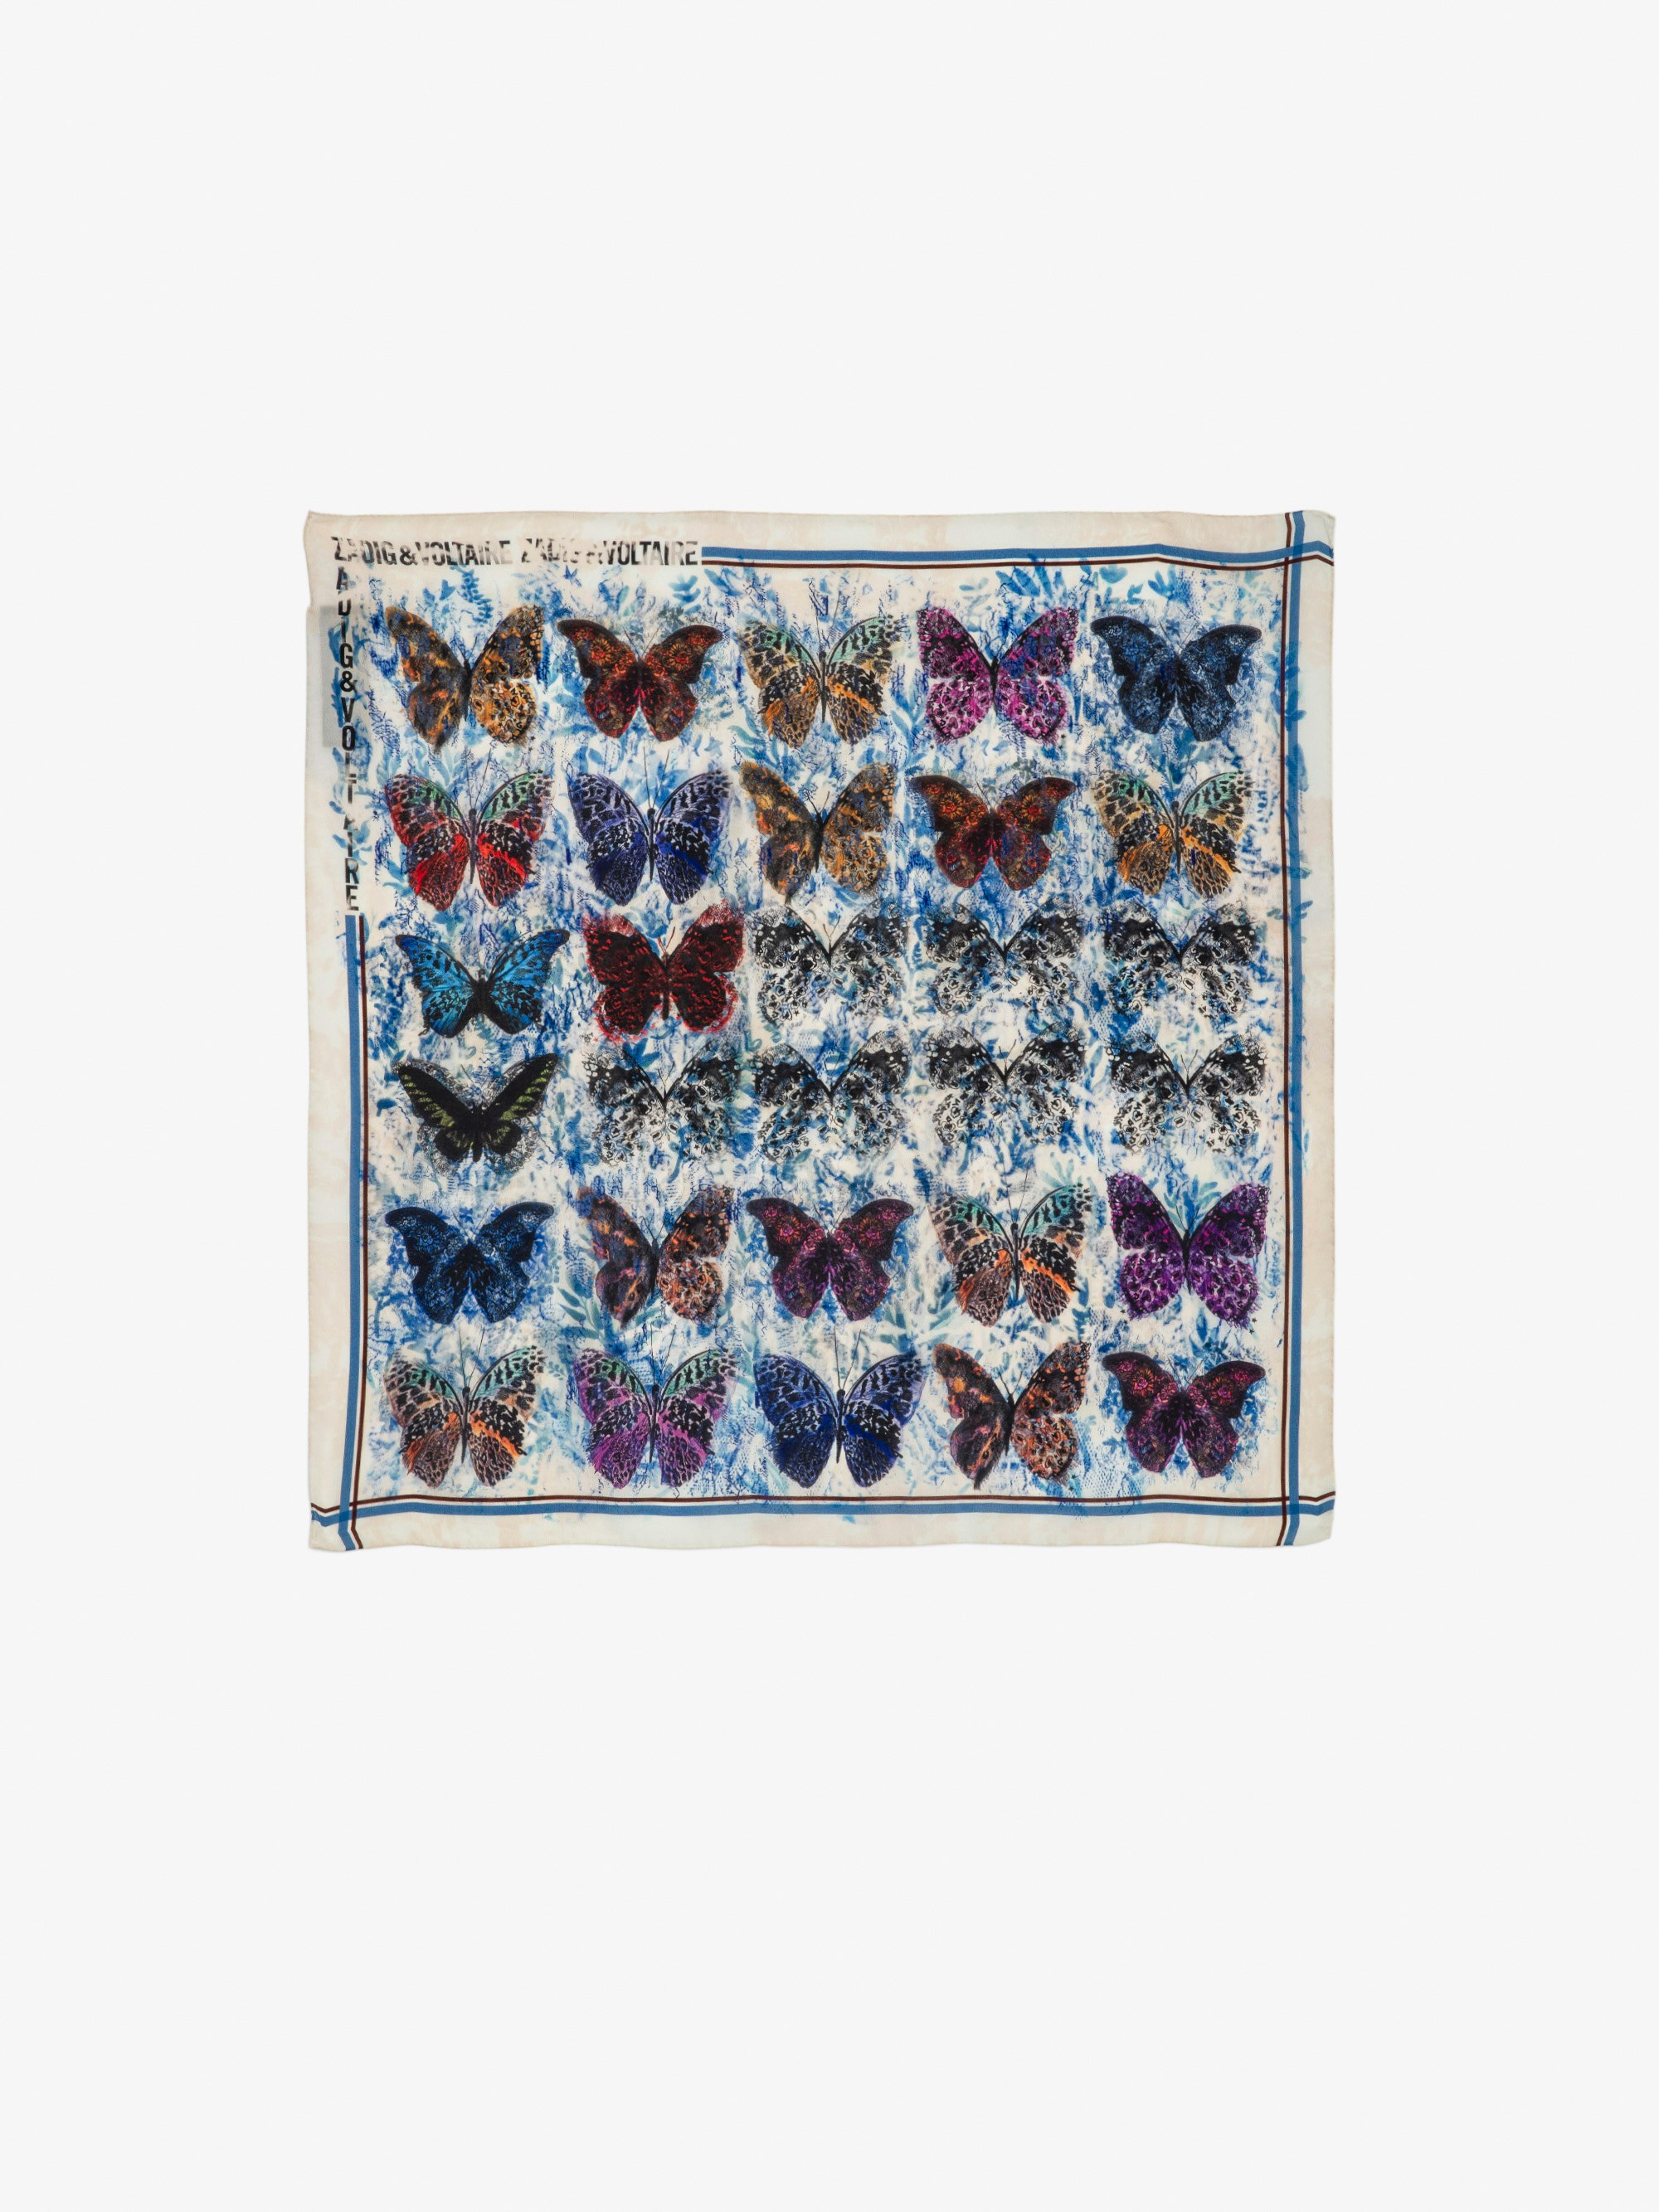 Pañuelo de Seda Blondie 65 - Pañuelo cuadrado de seda con estampado de mariposas y encaje.